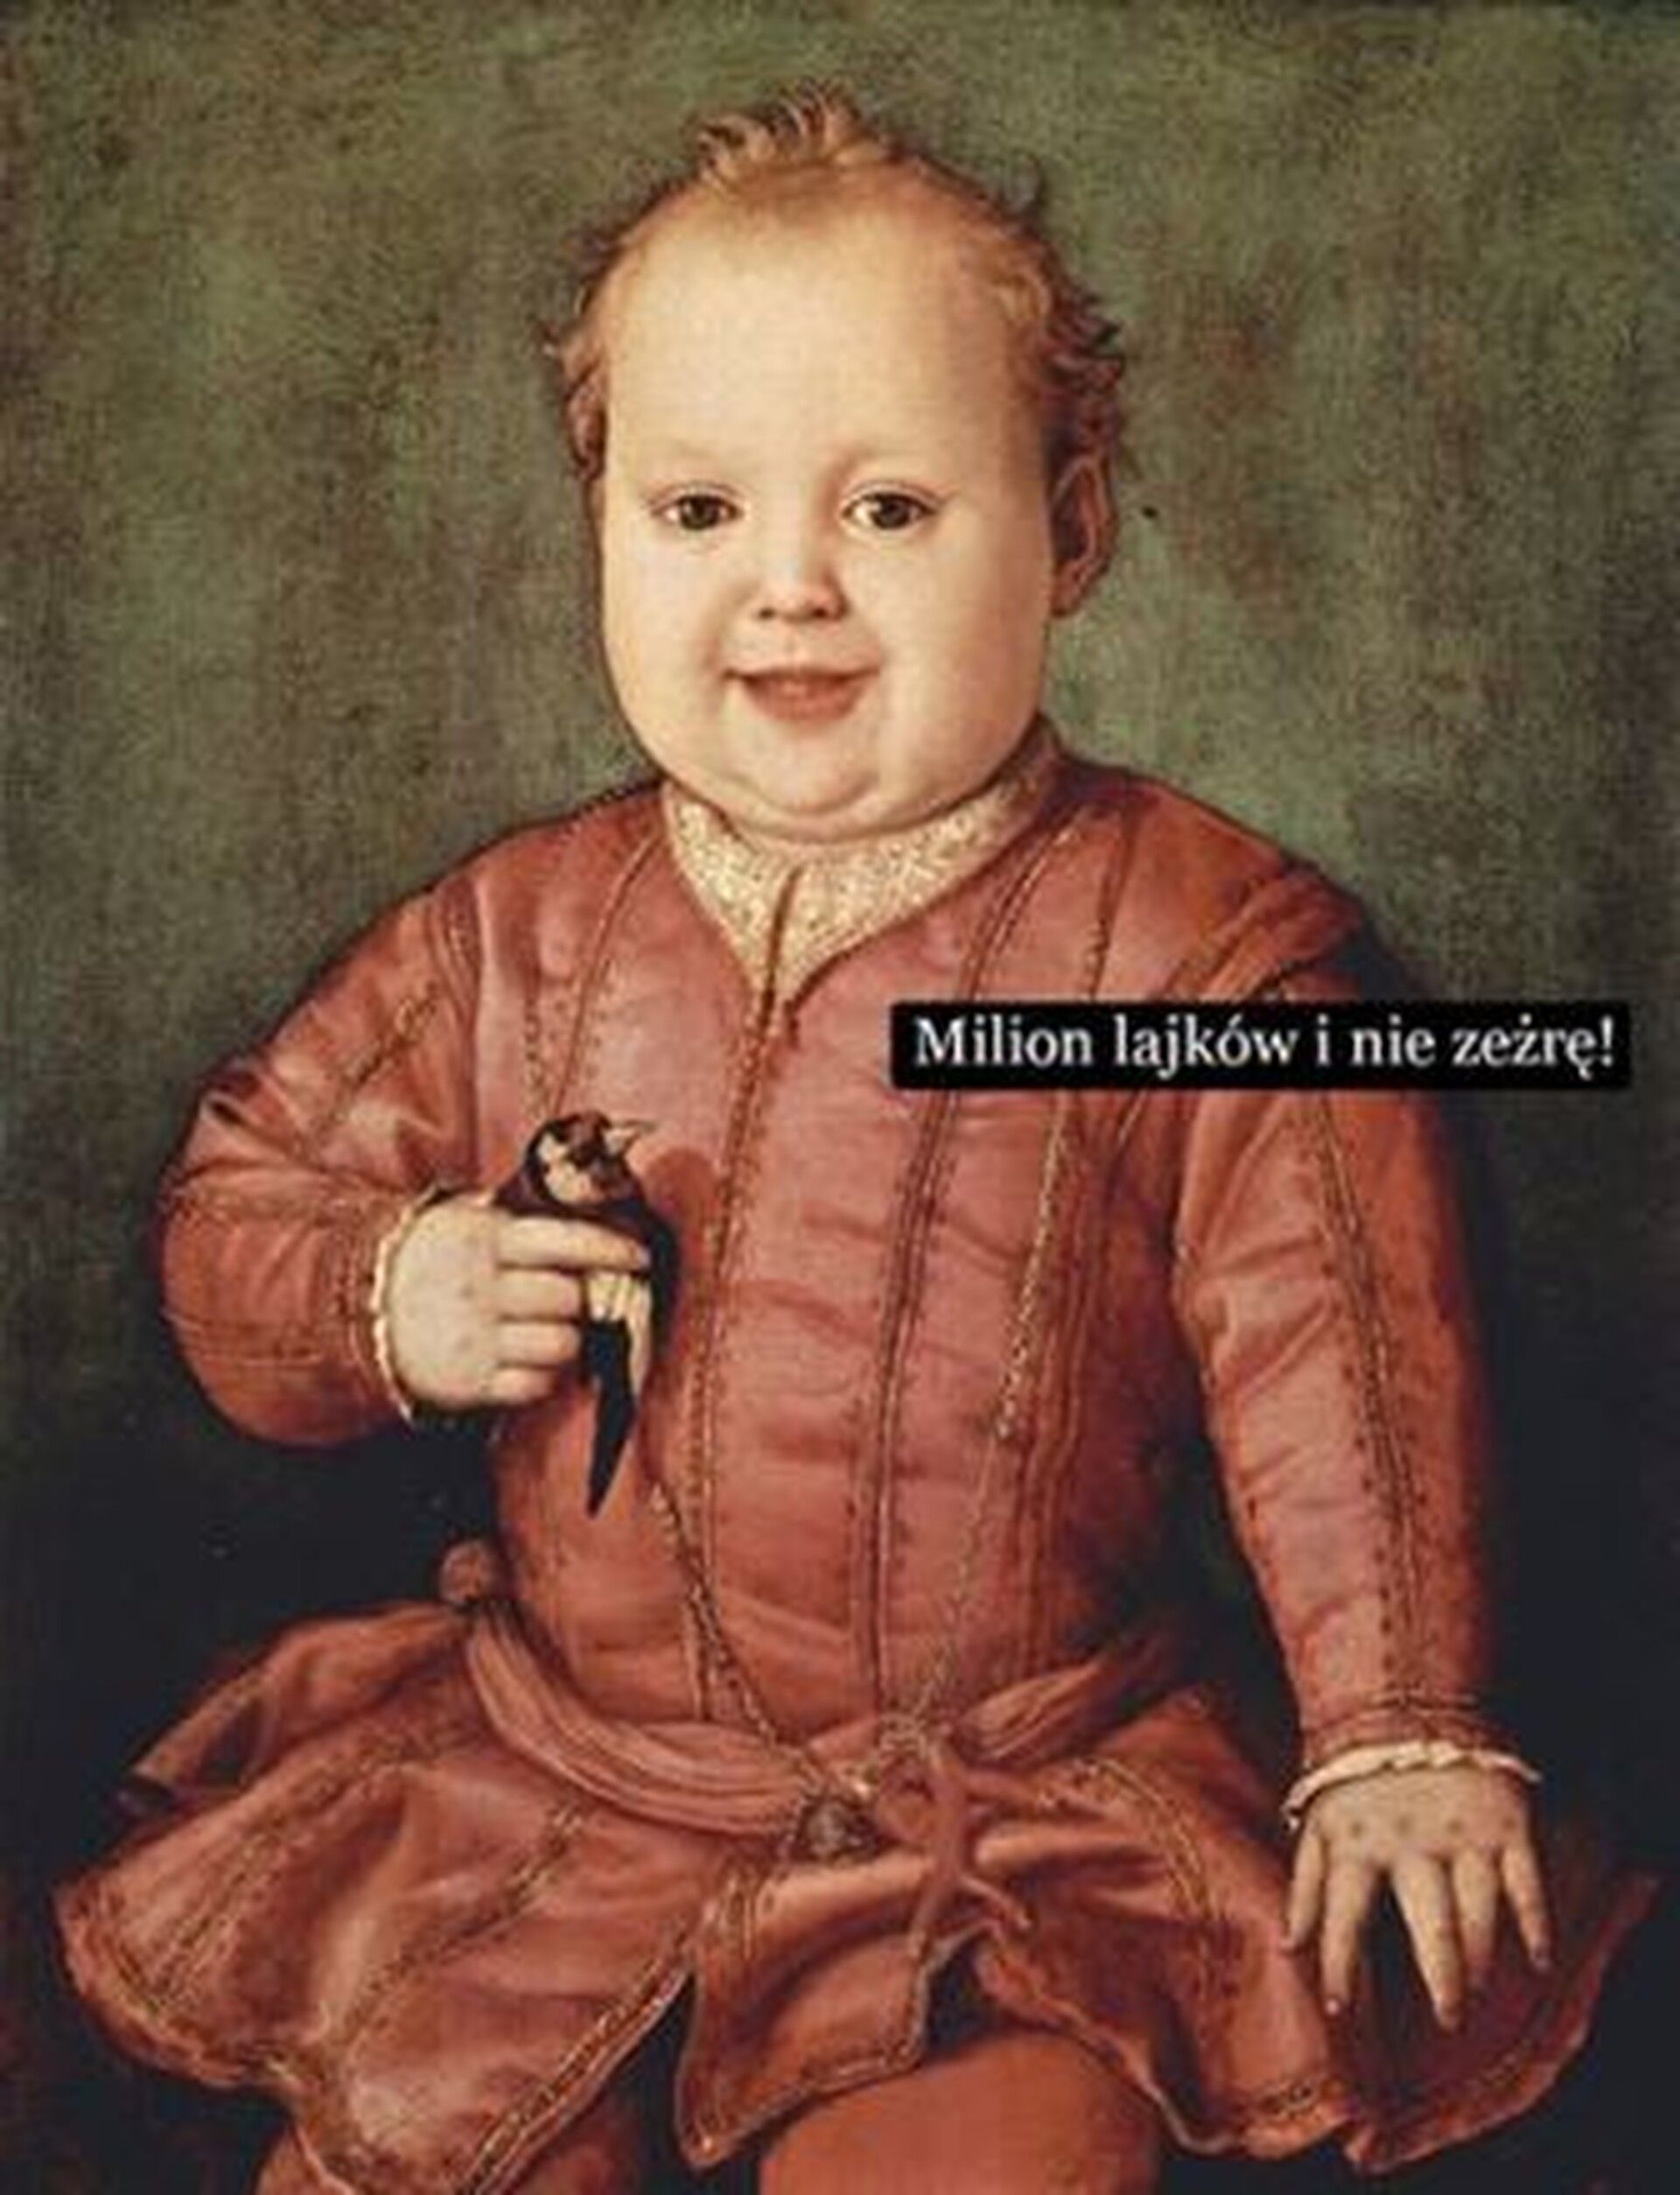  XVI-wieczny obraz przerobiony na mem. Na obrazku widzimy obraz autorstwa Agnolo Bronzino przedstawiający półtorarocznego Giovanniego Medici ściskającego w garści małego ptaka. Został dodany napis o treści: „Milion lajków i nie zeżrę!”. 